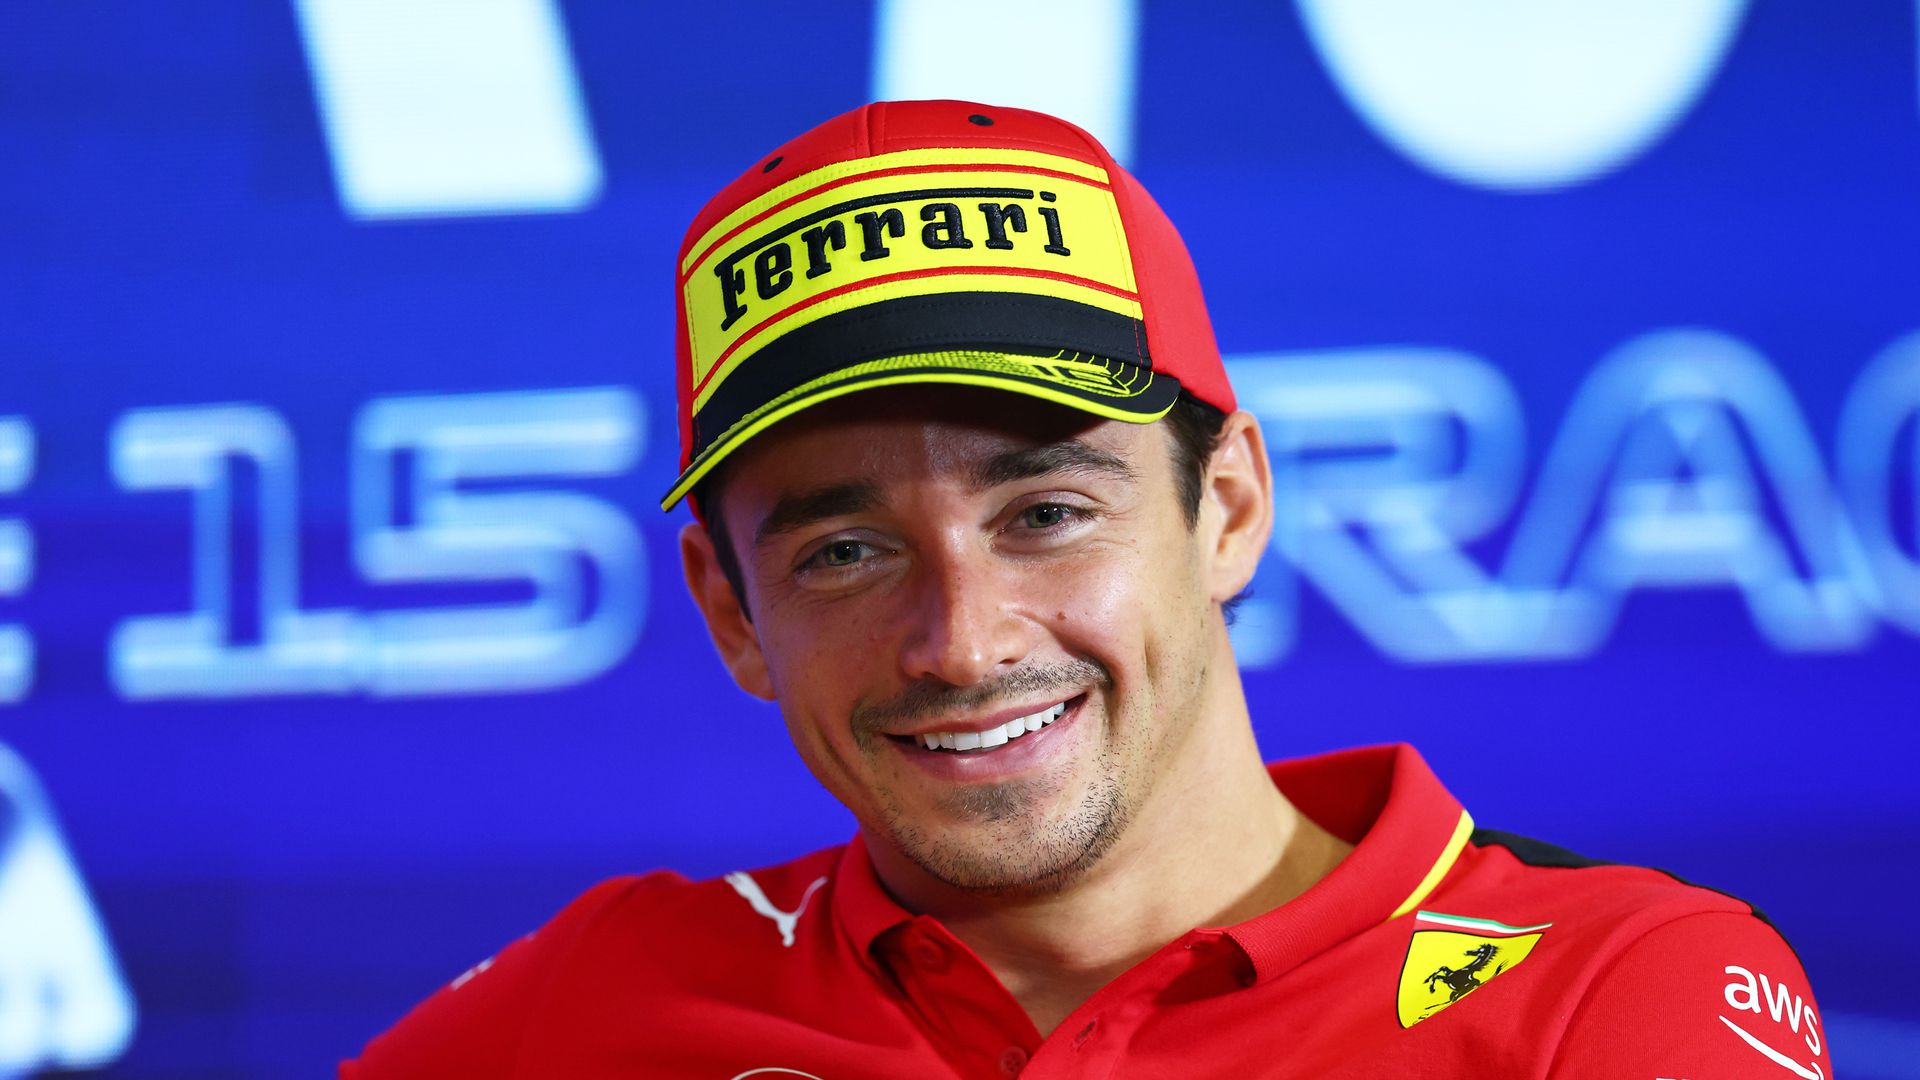 Leclerc motivált a Ferrari hazai versenye előtt (Fotó: Getty Images)